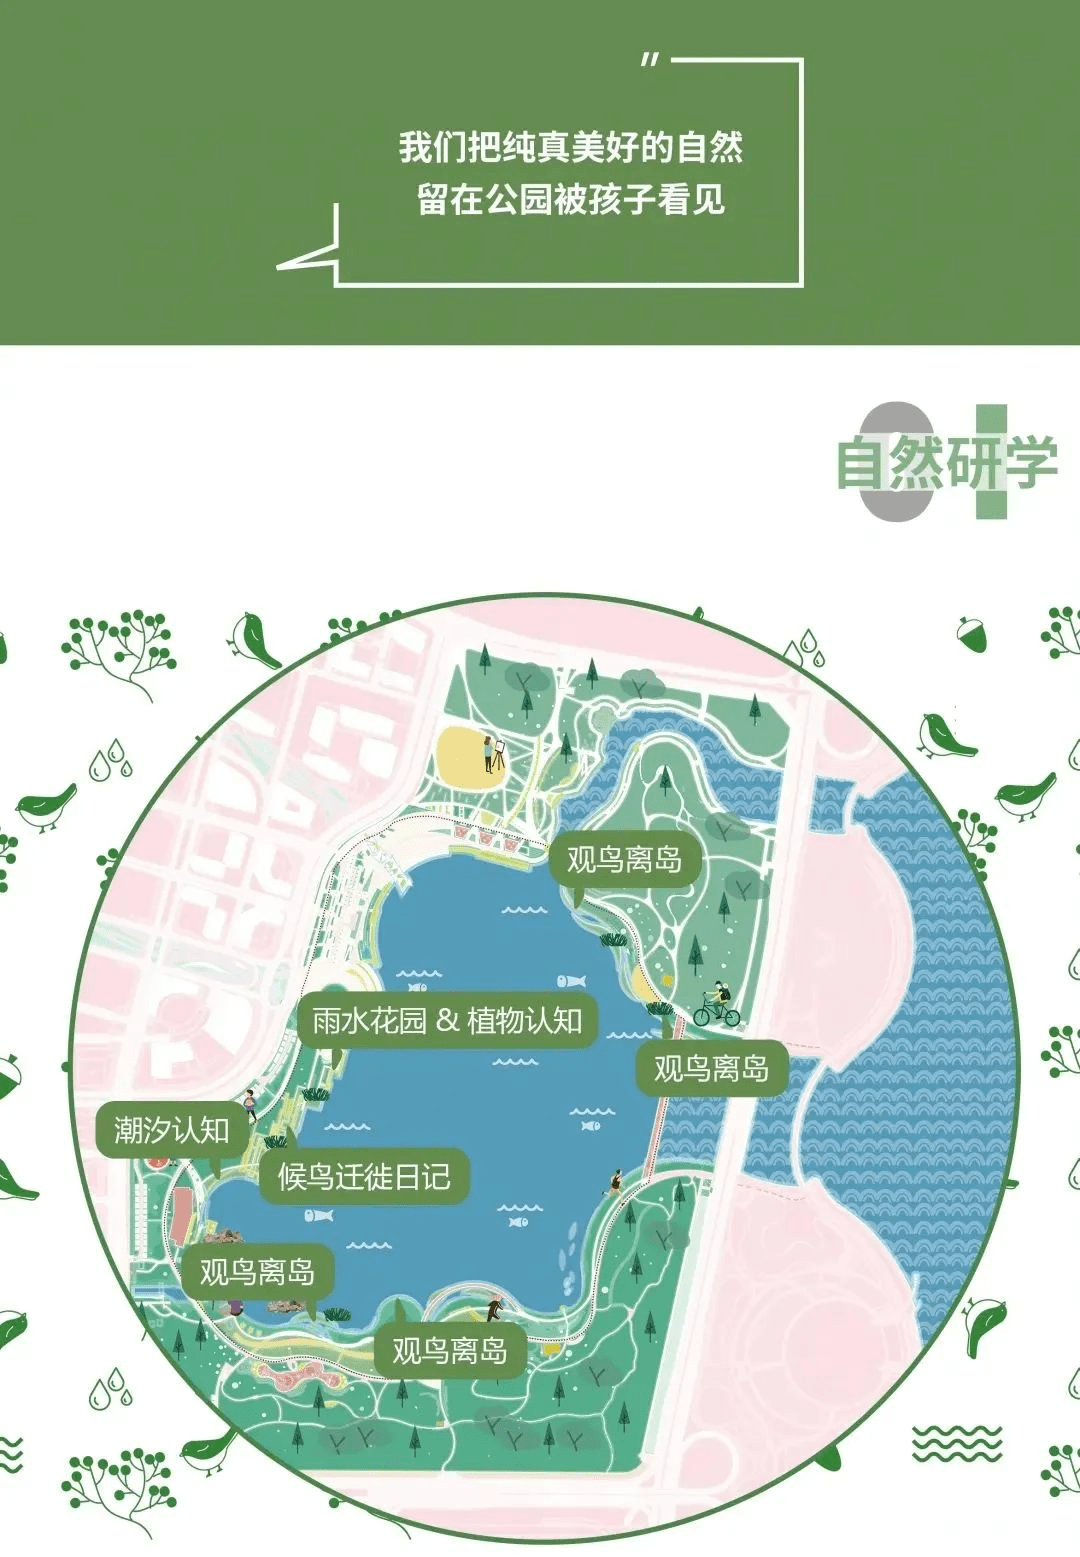 深圳人才公园地图图片